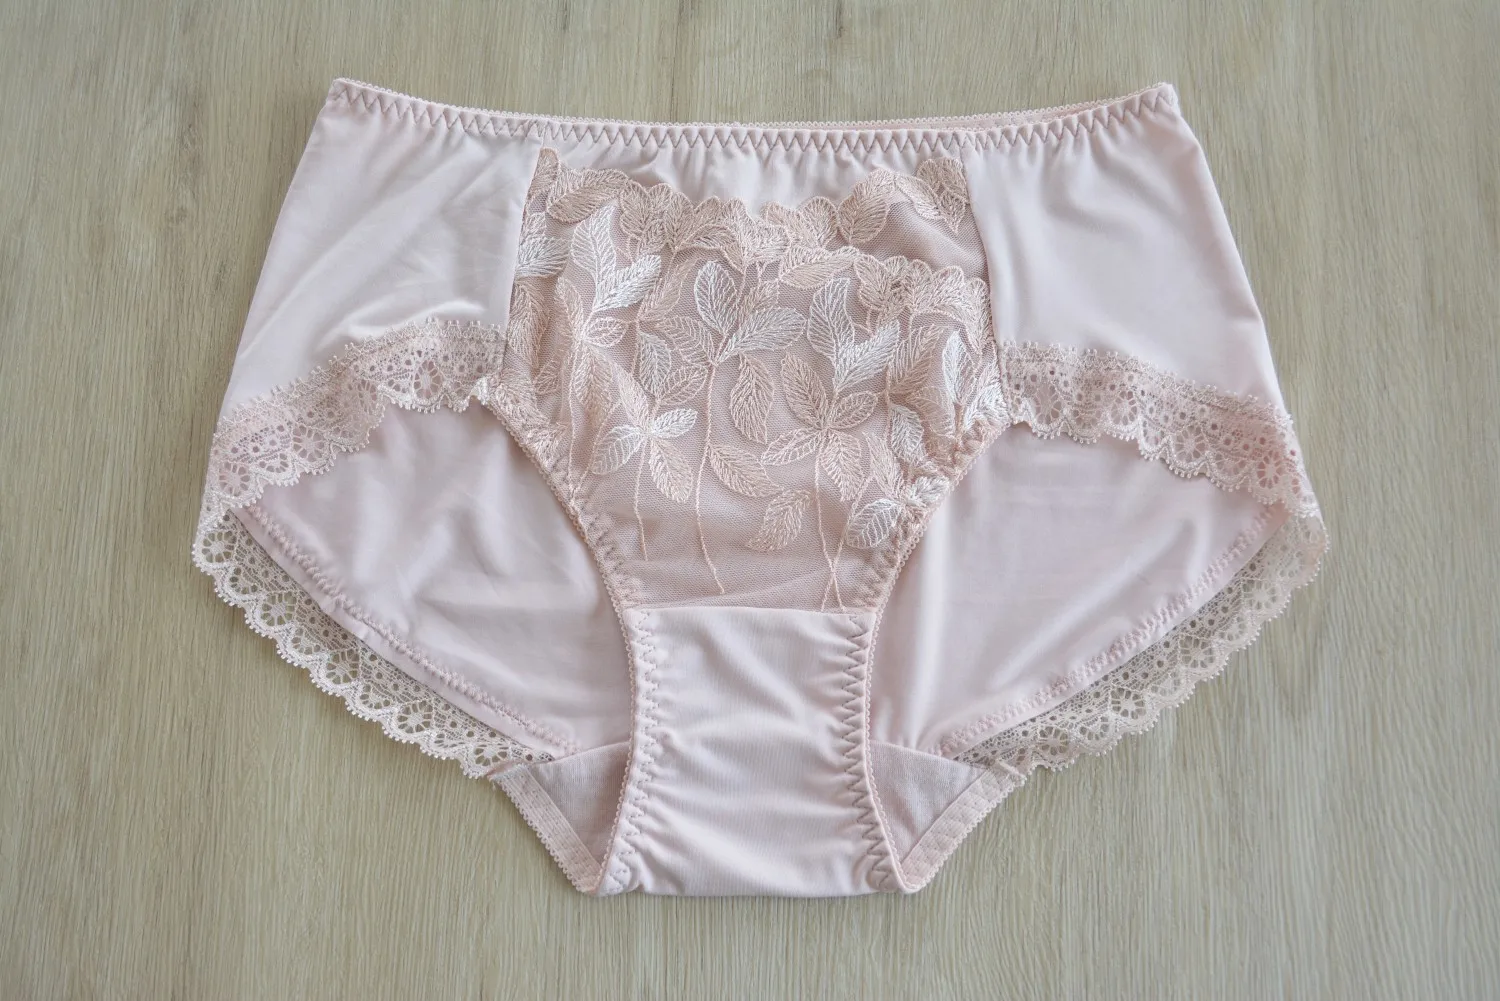 

5pcs/Lot Ladies Briefs Lace Lingeries Panties For Women LadiesUnderwear Plus Size Avaiable Accept Mix color Order